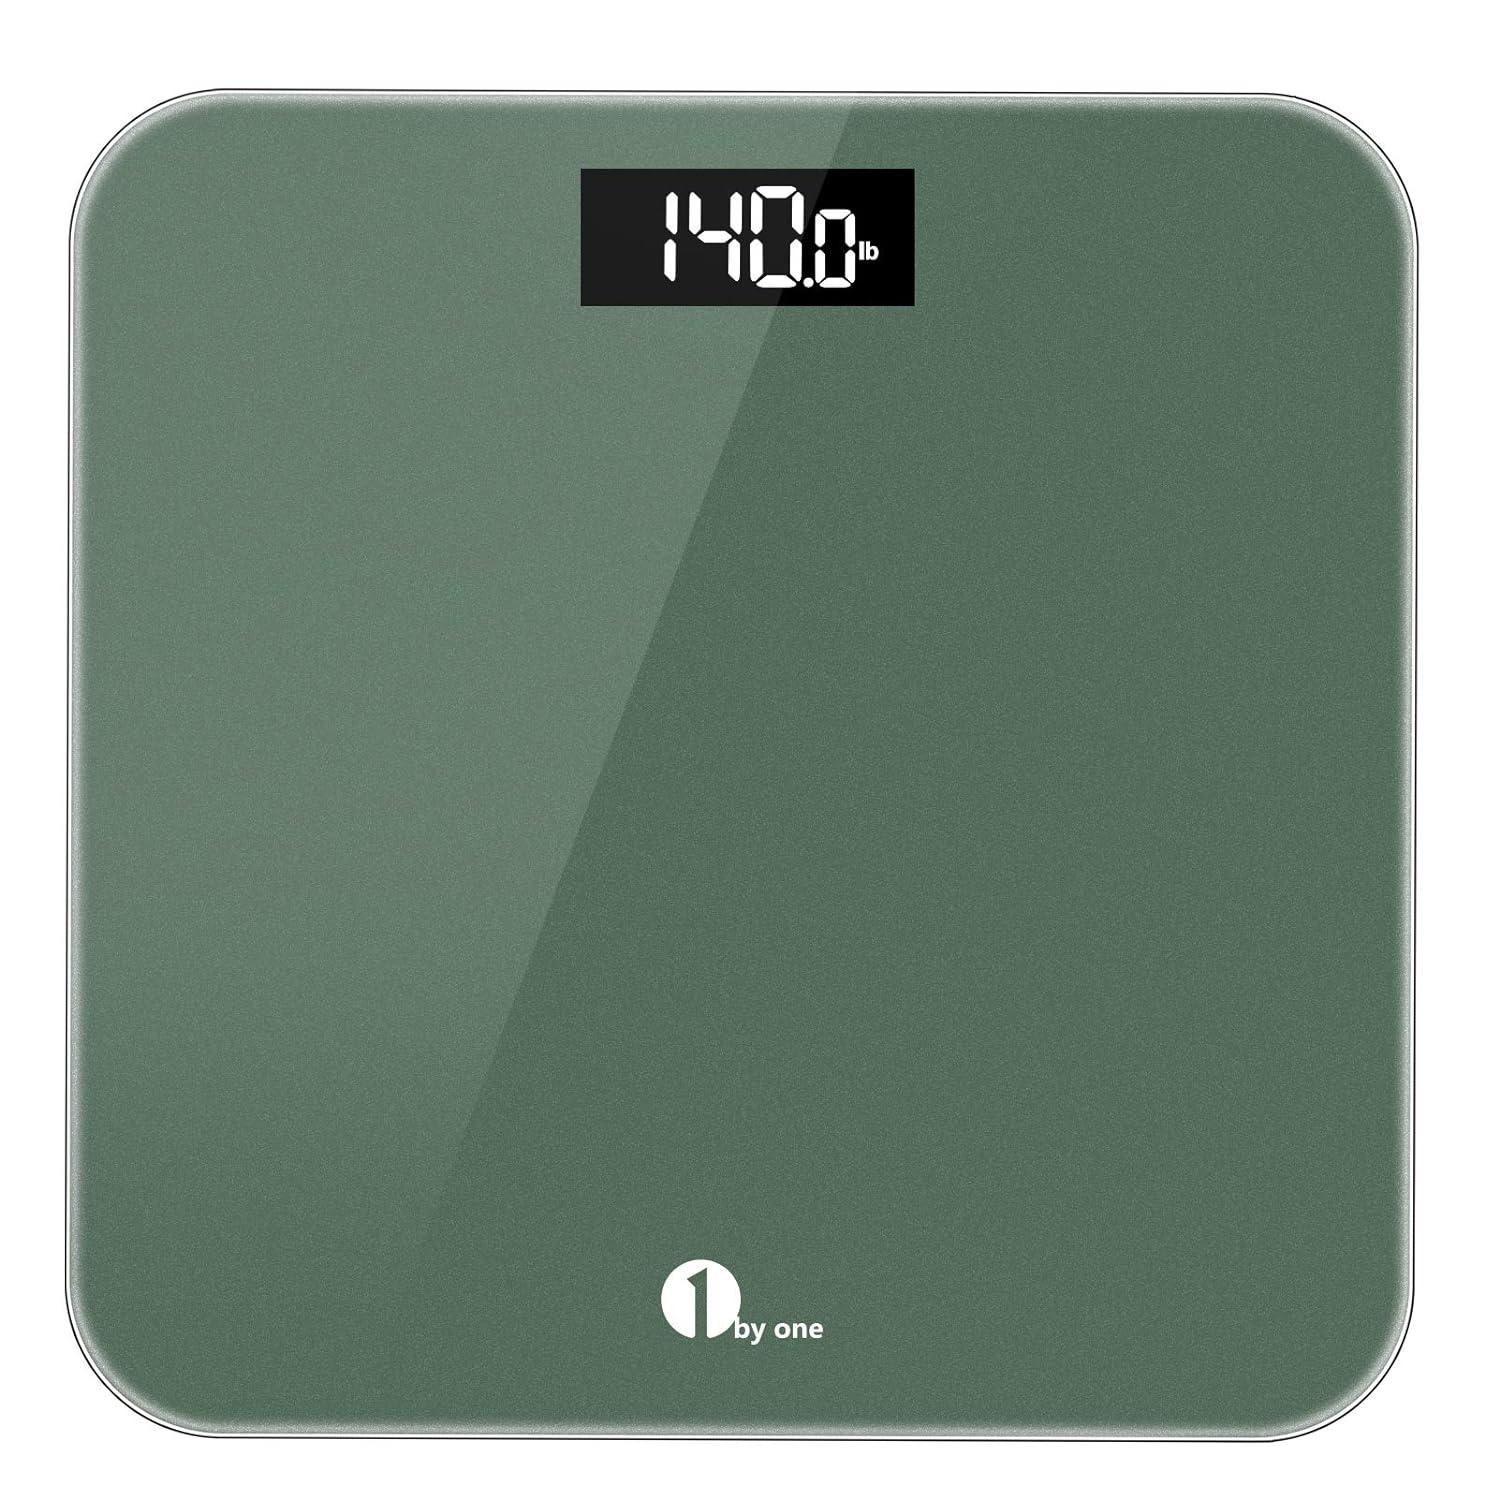 Báscula digital de peso corporal, báscula de baño para personas con pantalla - VIRTUAL MUEBLES